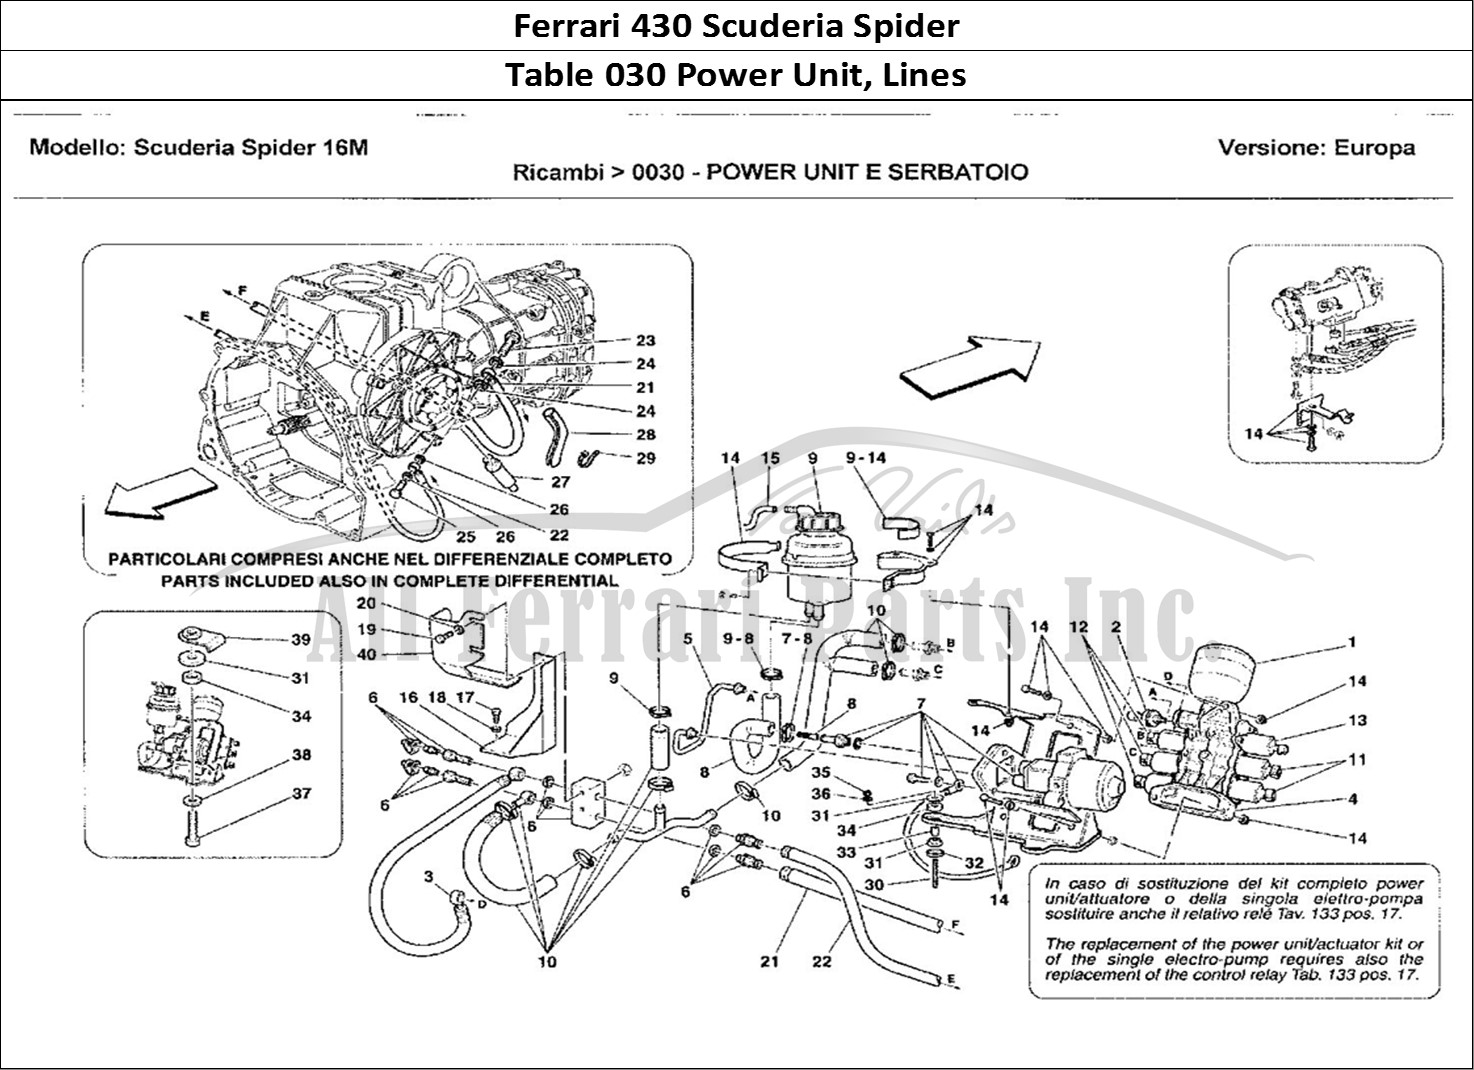 Ferrari Parts Ferrari 430 Scuderia Spider 16M Page 030 Power Unit e Serbatoio